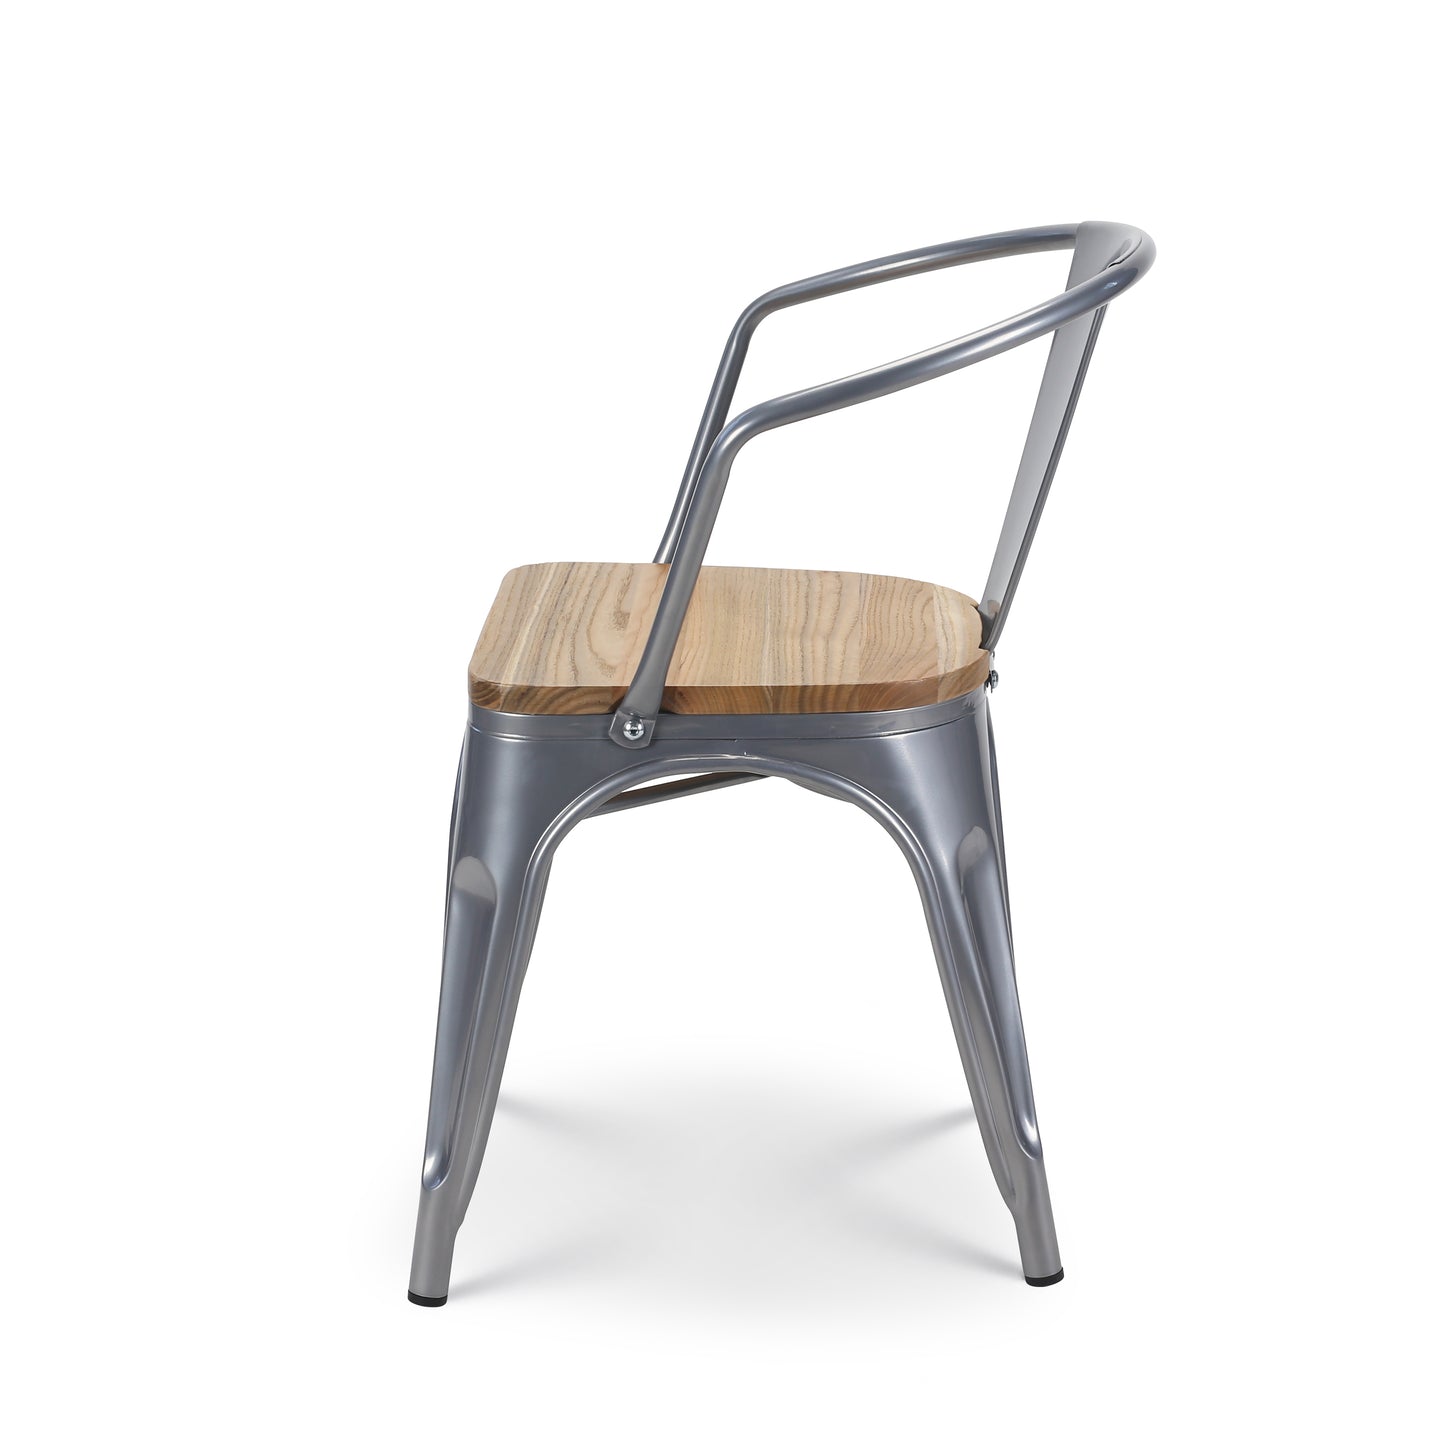 Chaise en métal silver style Industriel et assise en bois naturel clair - Avec accoudoirs